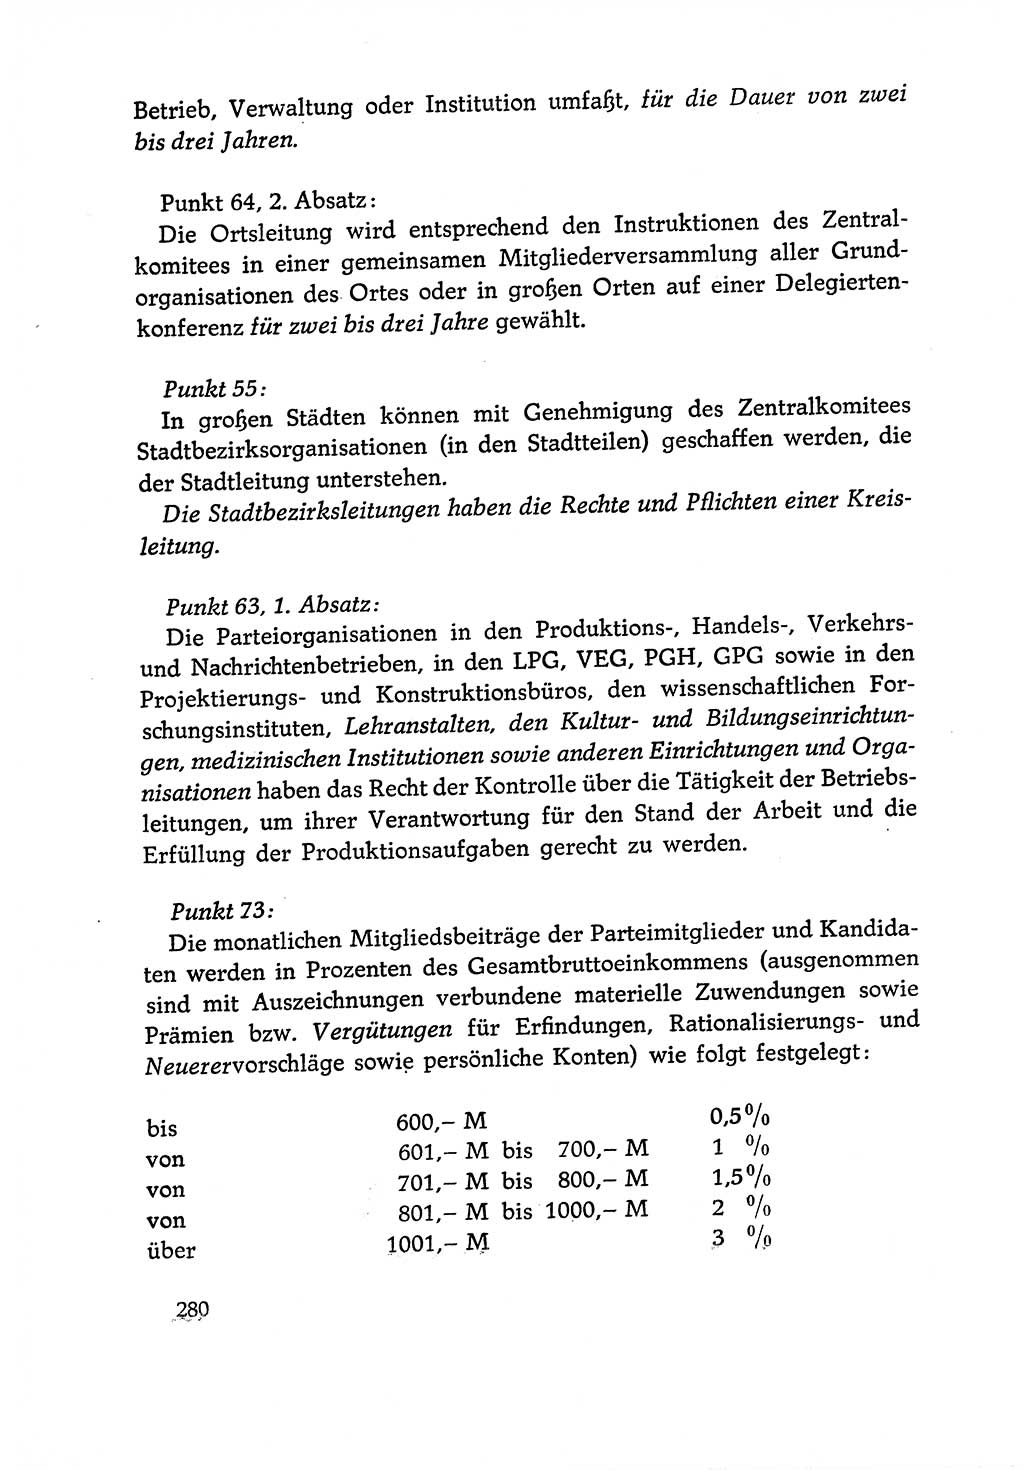 Dokumente der Sozialistischen Einheitspartei Deutschlands (SED) [Deutsche Demokratische Republik (DDR)] 1970-1971, Seite 280 (Dok. SED DDR 1970-1971, S. 280)